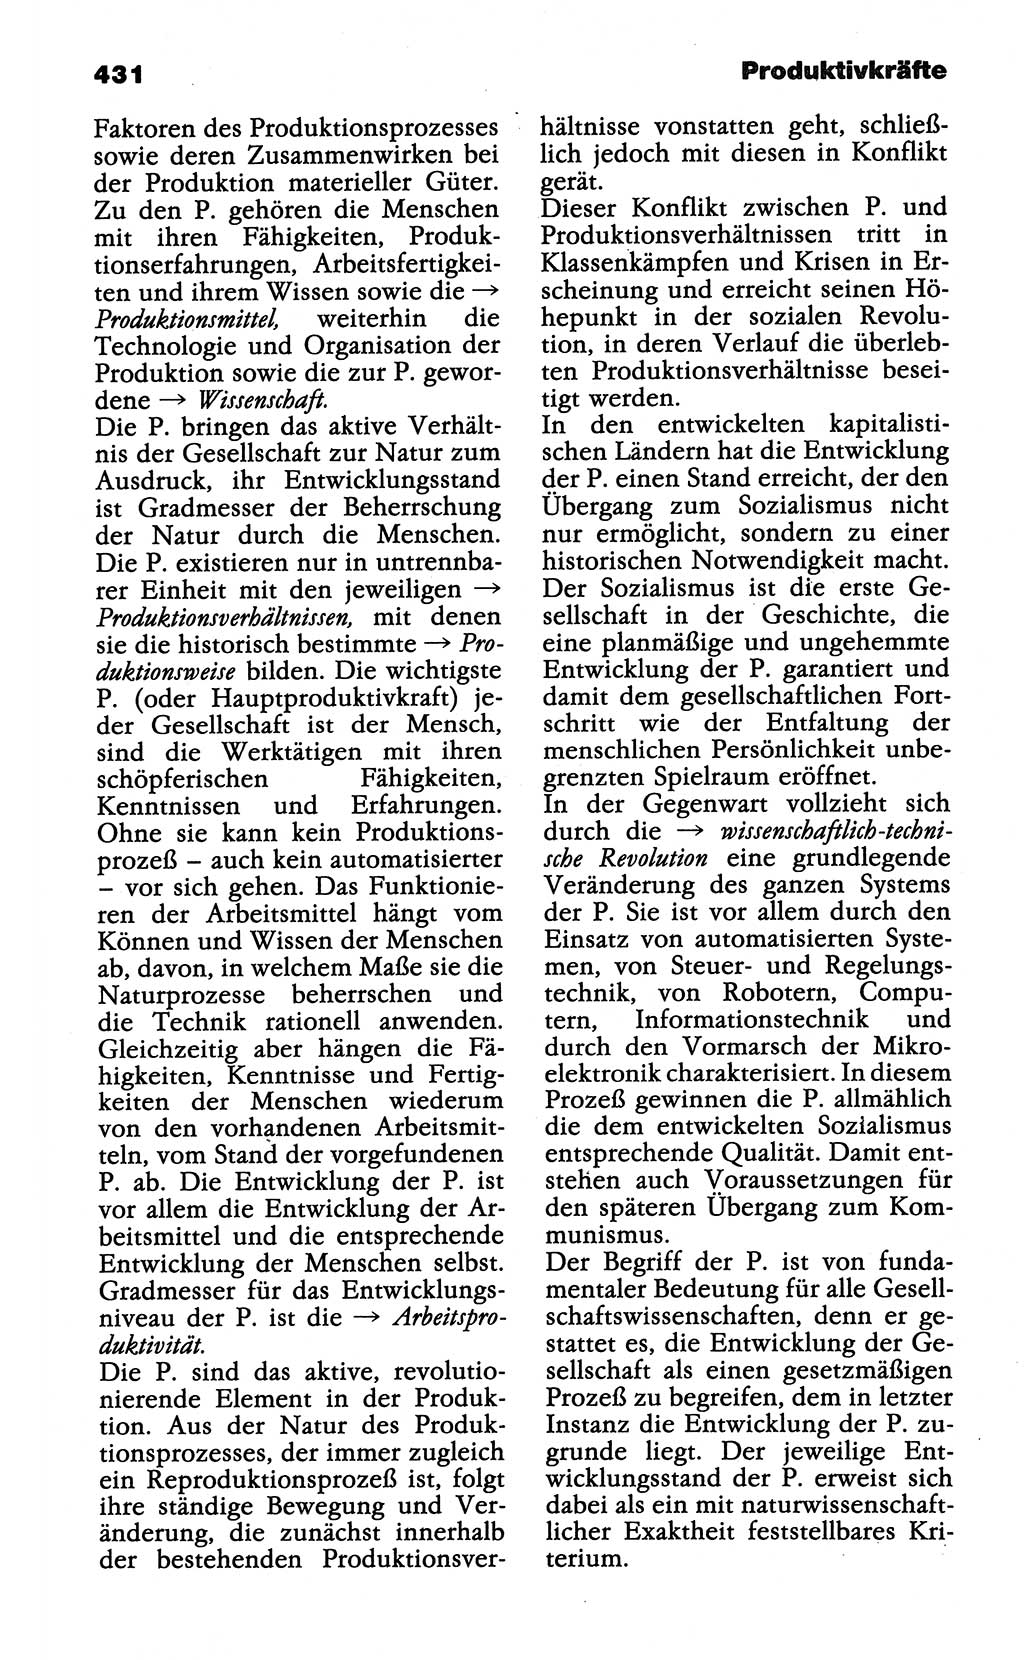 Wörterbuch der marxistisch-leninistischen Philosophie [Deutsche Demokratische Republik (DDR)] 1985, Seite 431 (Wb. ML Phil. DDR 1985, S. 431)